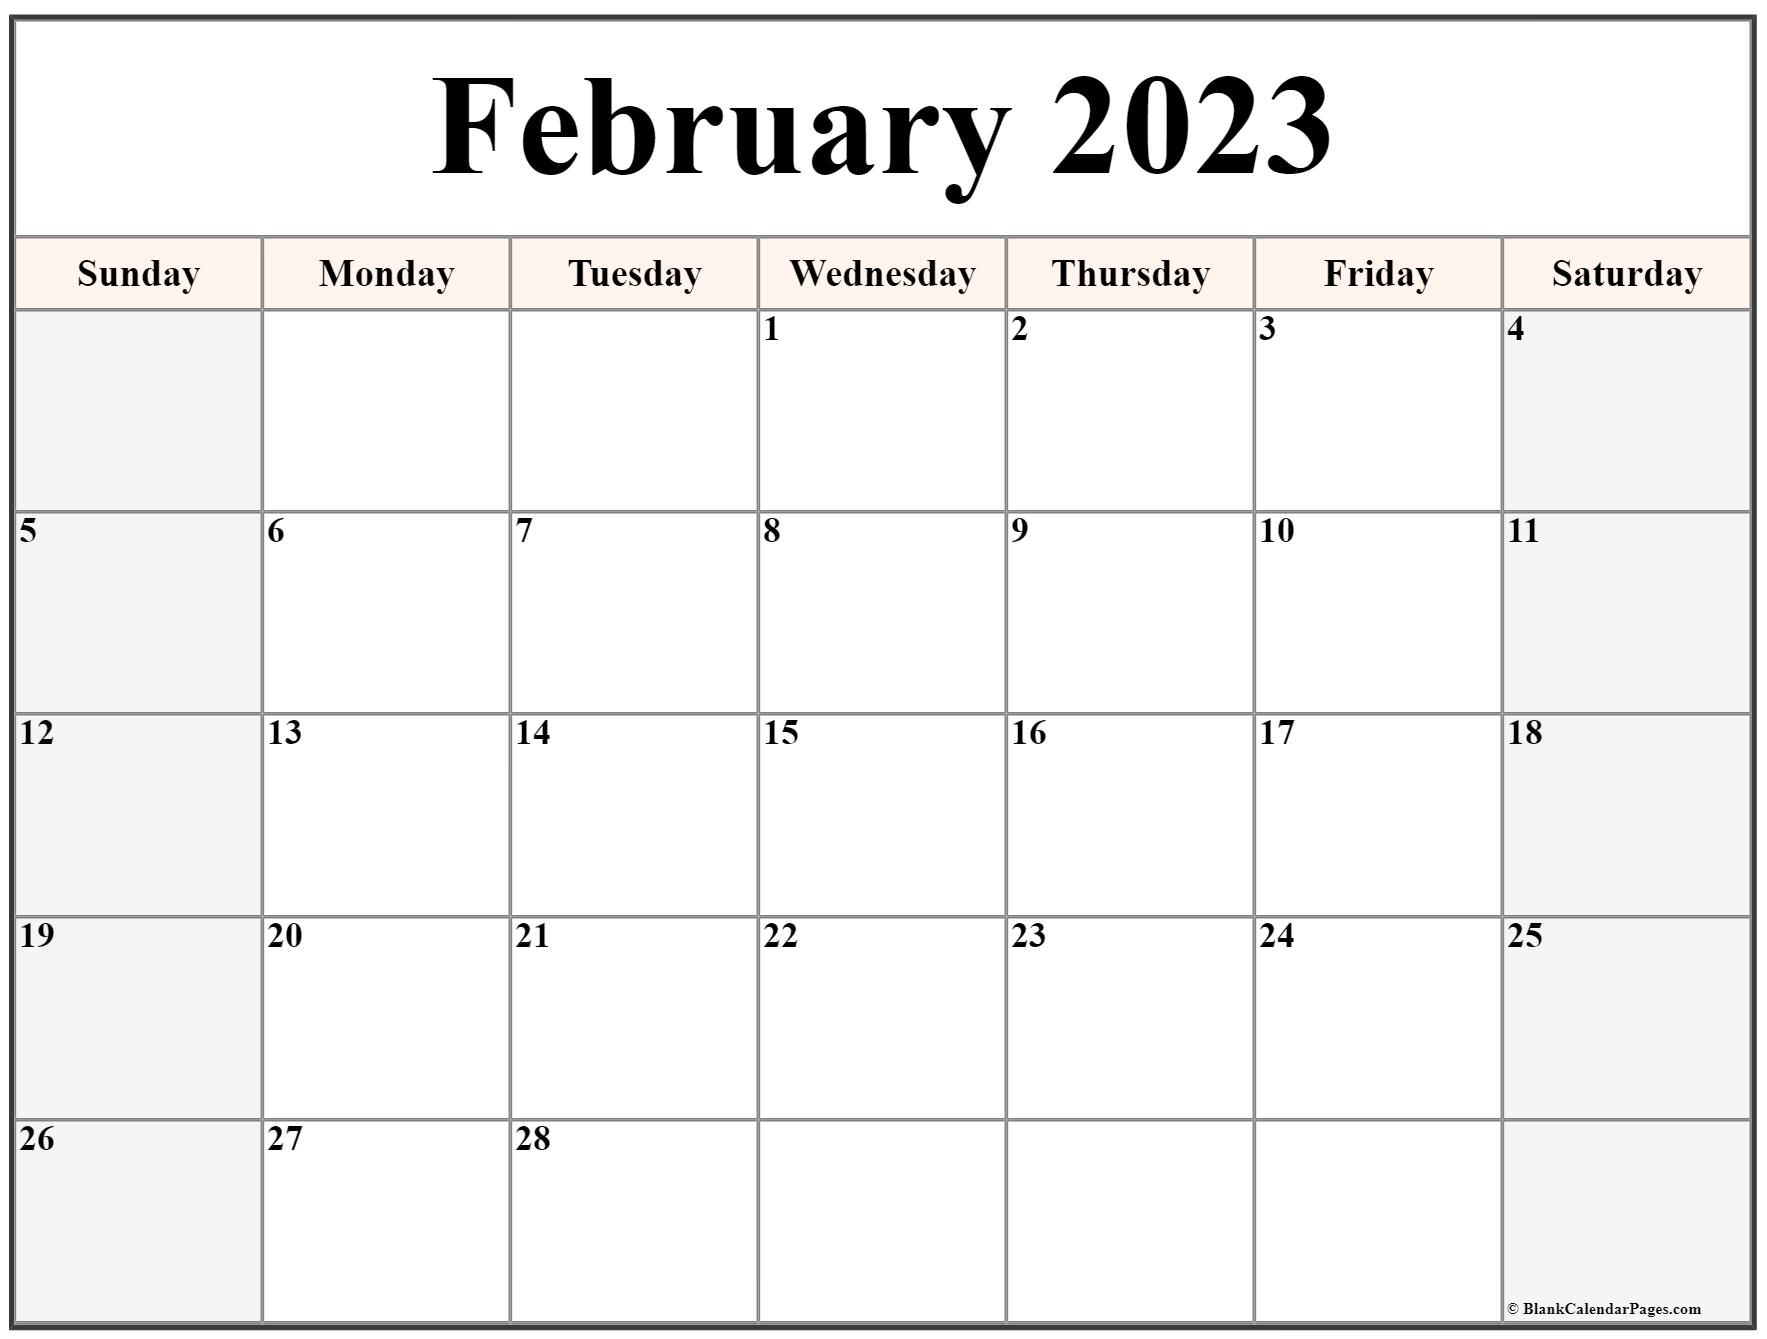 February 2023 Calendar Templates For Word Excel And PDF - 2023Calendar.net